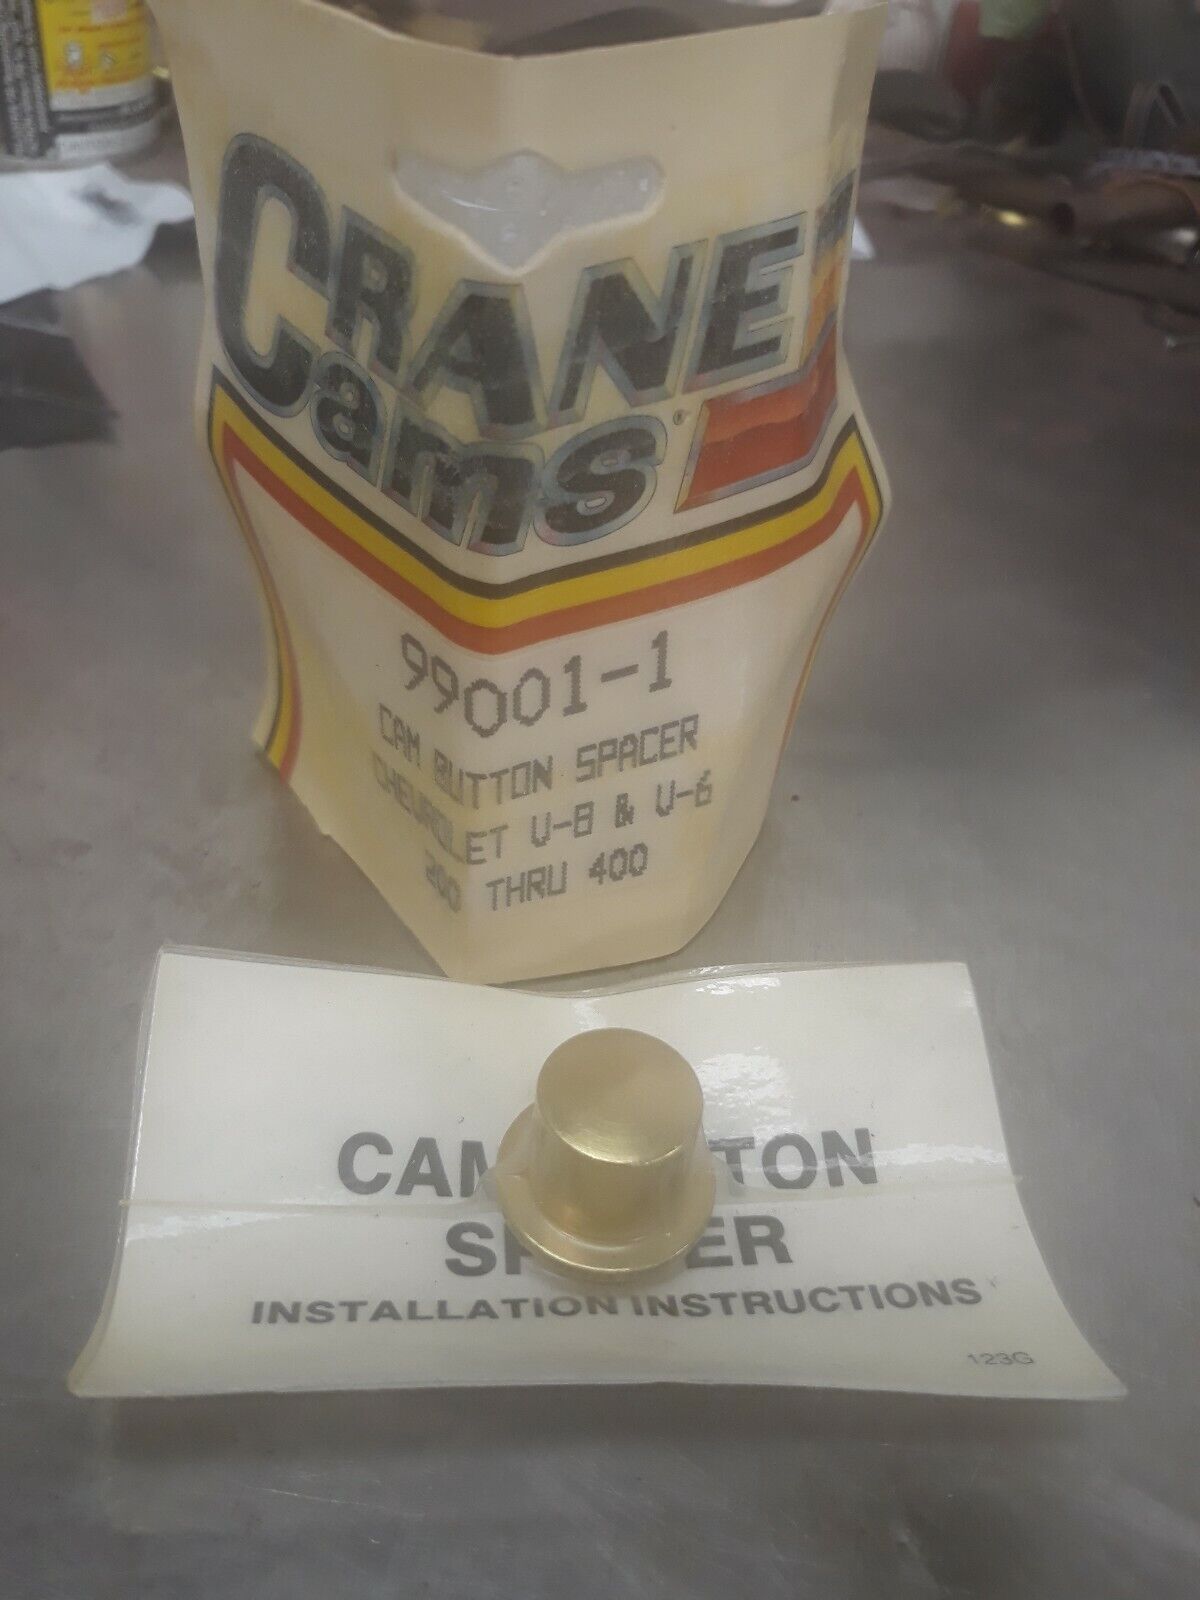 NEW Crane Cams Chevy Cam Button Spacer 99001-1 Chevrolet V8 & V6 200 Through 400